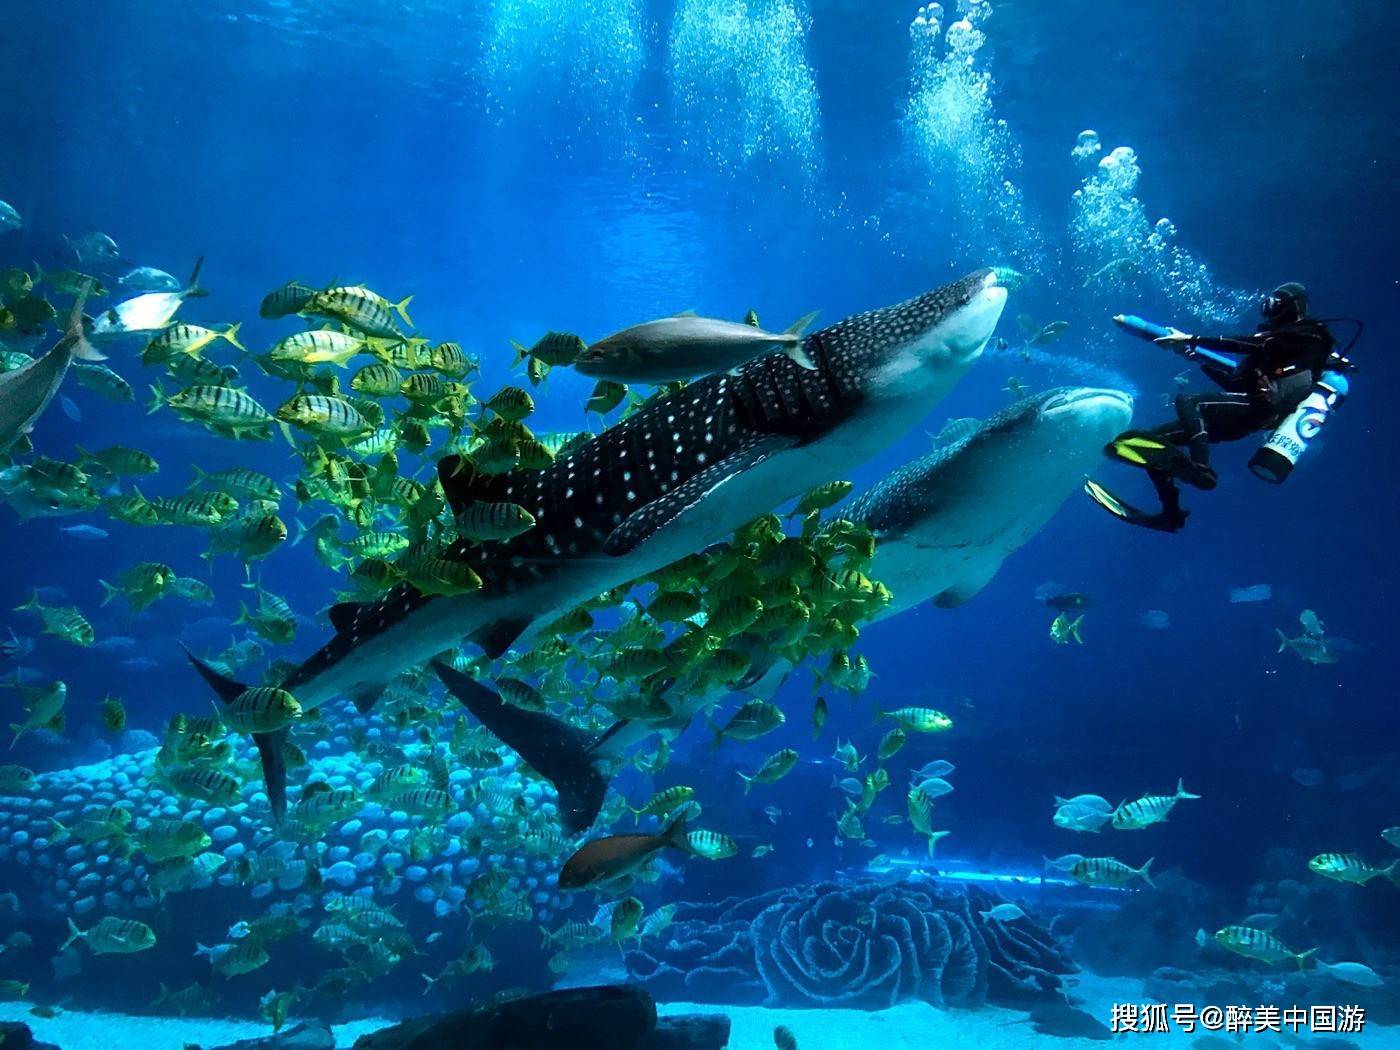 珠海长隆海洋王国，全球较大的海洋主题公园，令人震撼的视觉盛宴